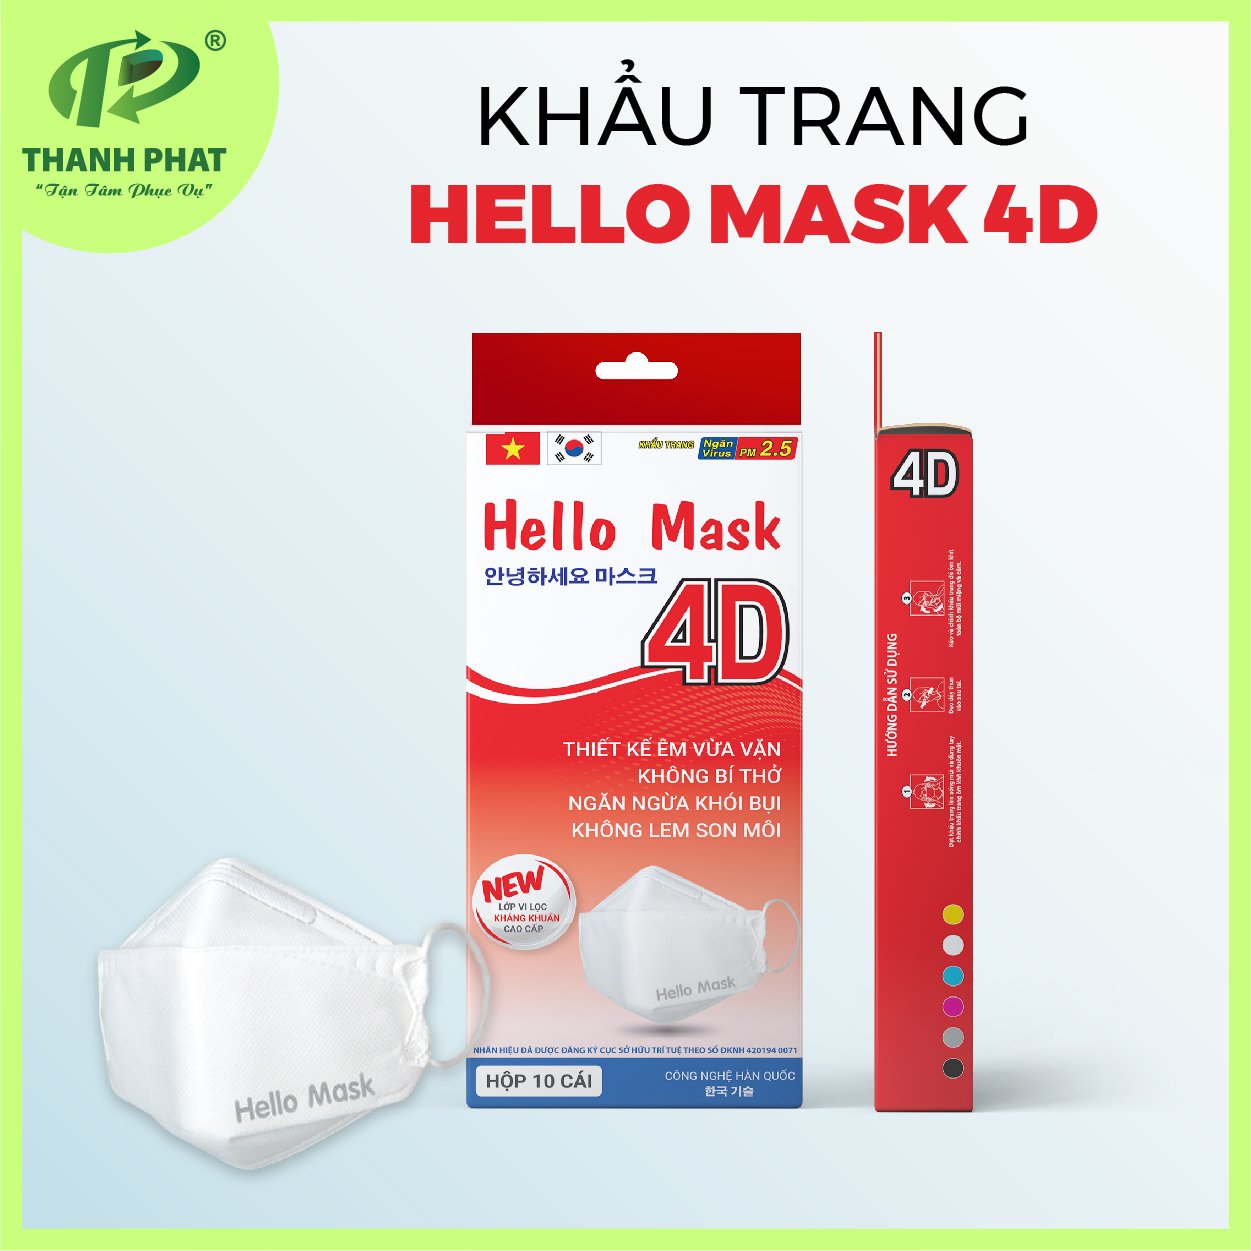 Khẩu trang cao cấp 4D Hello Mask - Khẩu Trang Y Tế Hello Mask - Vật Tư Y Tế - Công Ty TNHH Phát Triển Xuất Nhập Khẩu Thành Phát